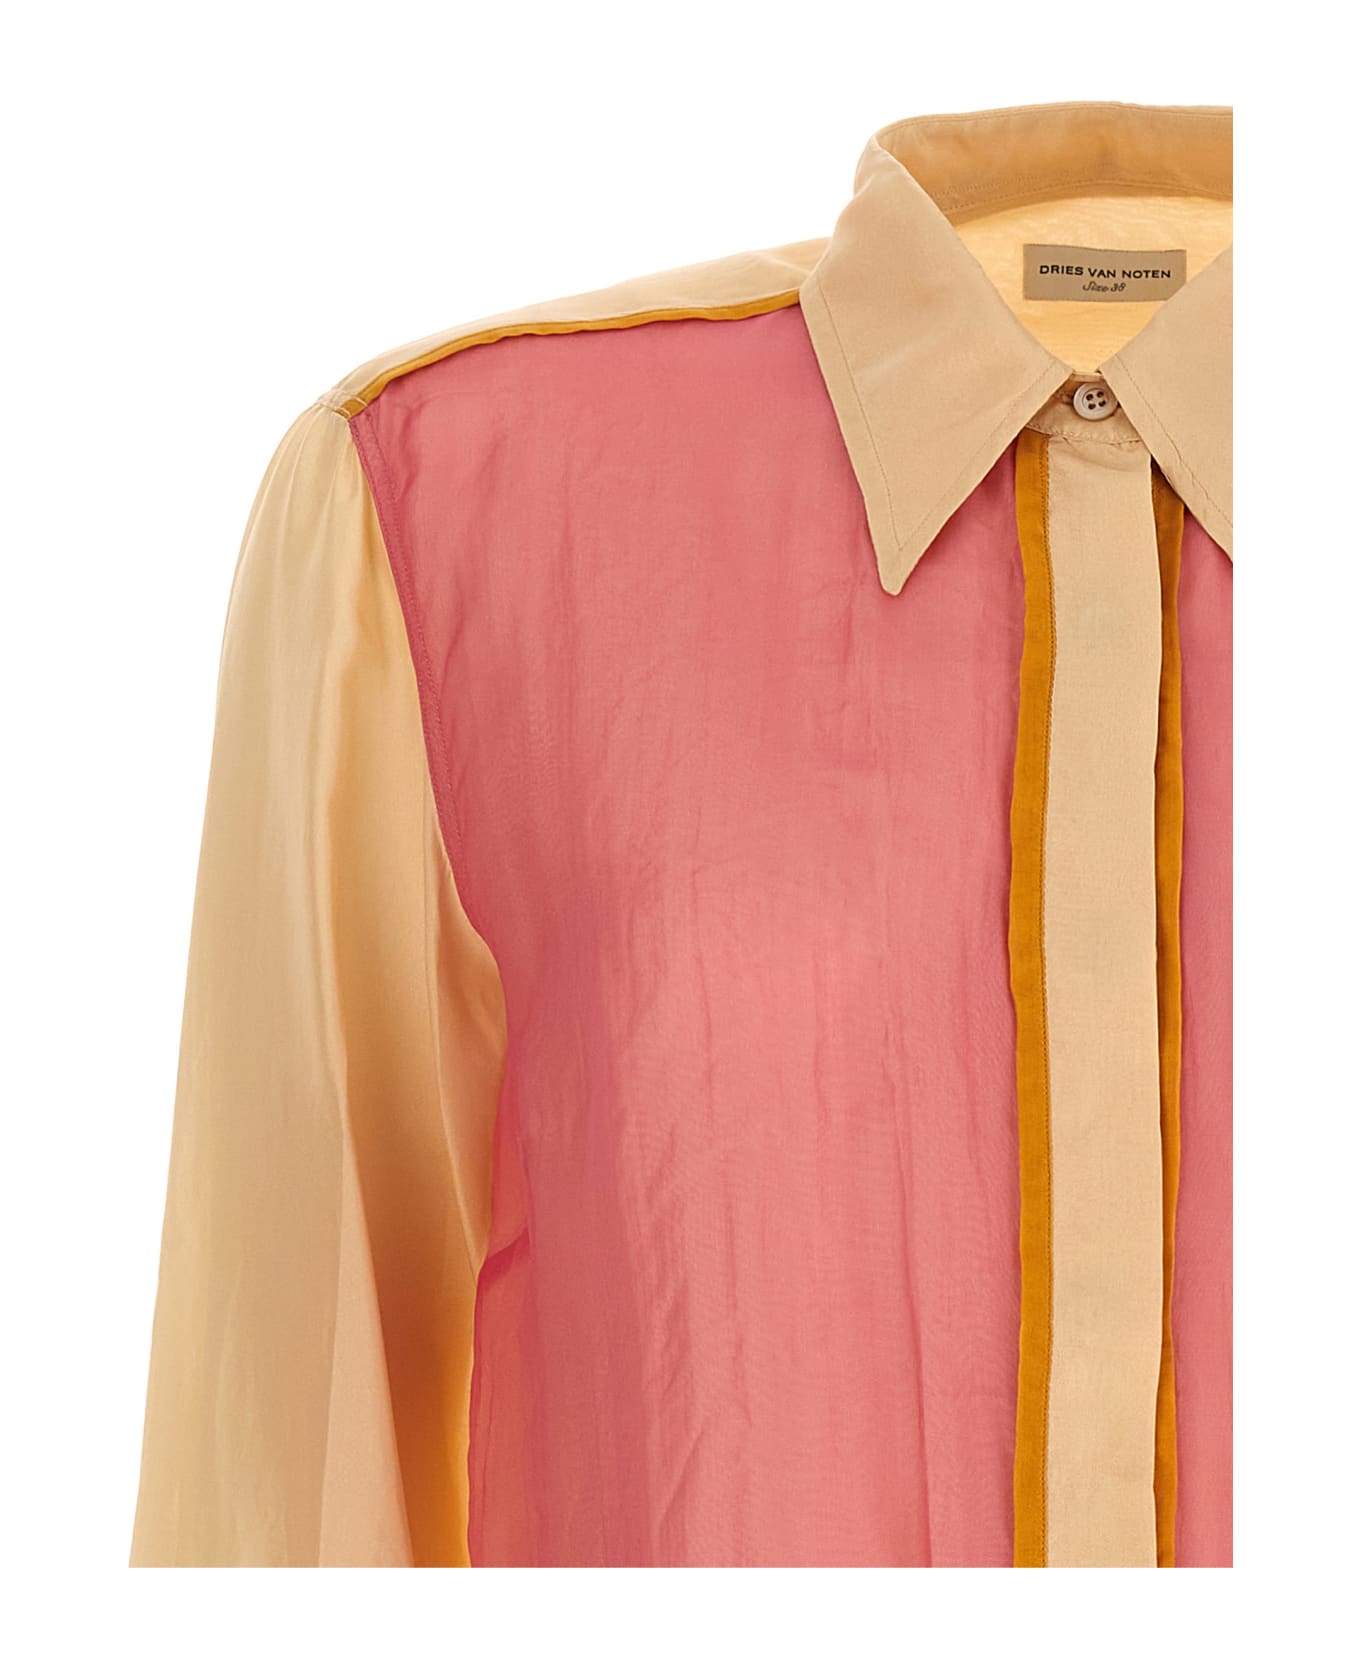 Dries Van Noten 'chowis' Shirt - Multicolor